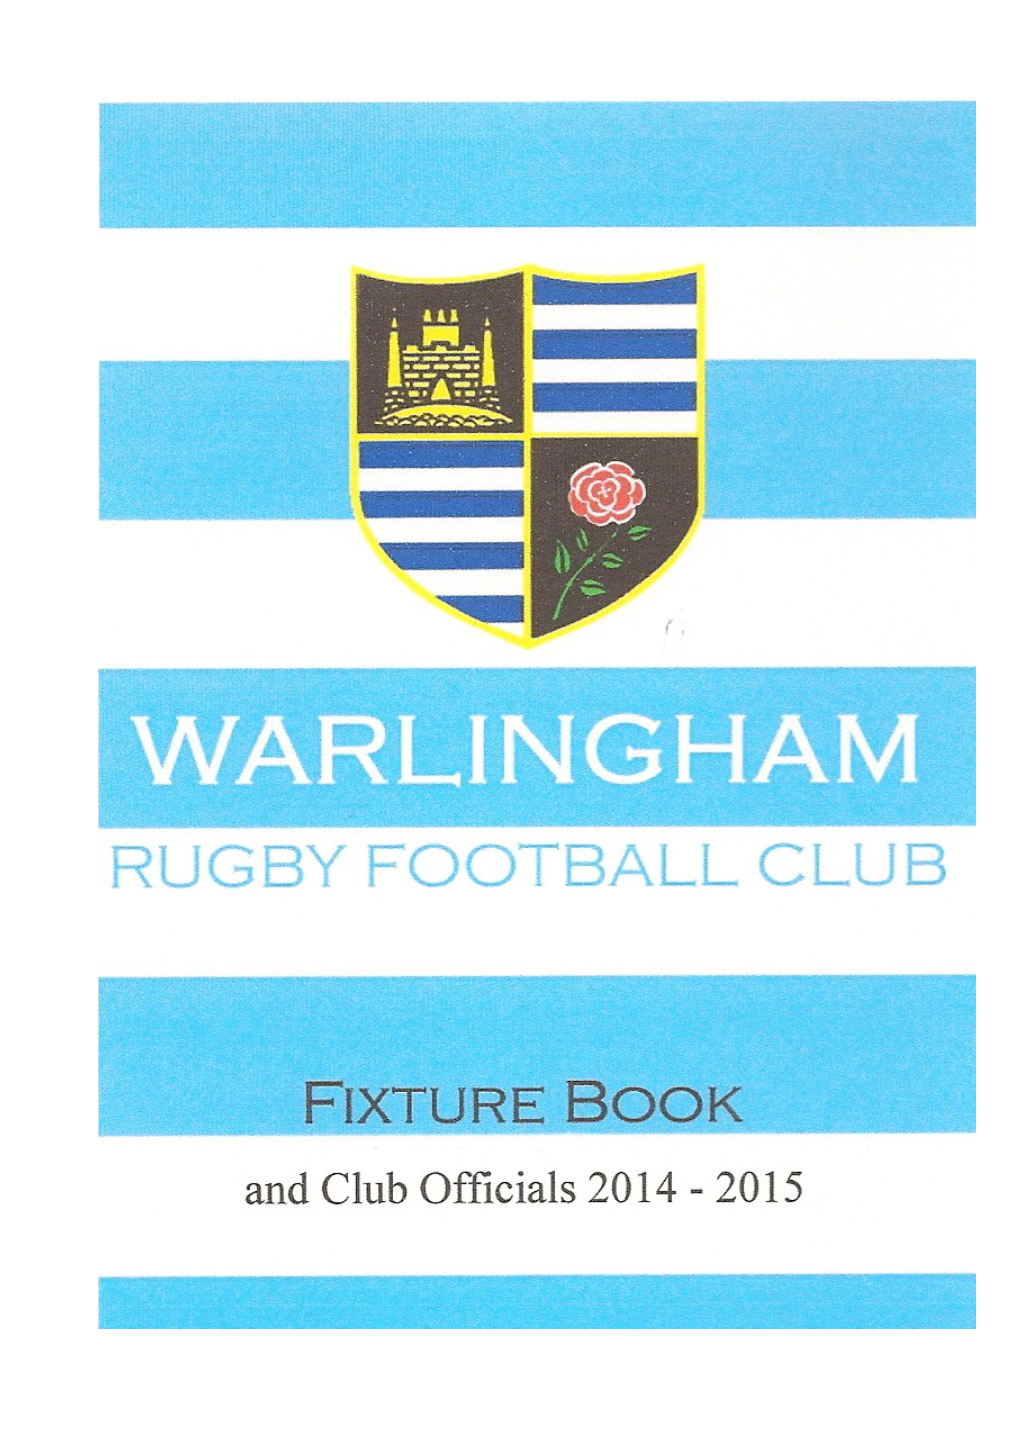 Warlingham Rugby Football Club